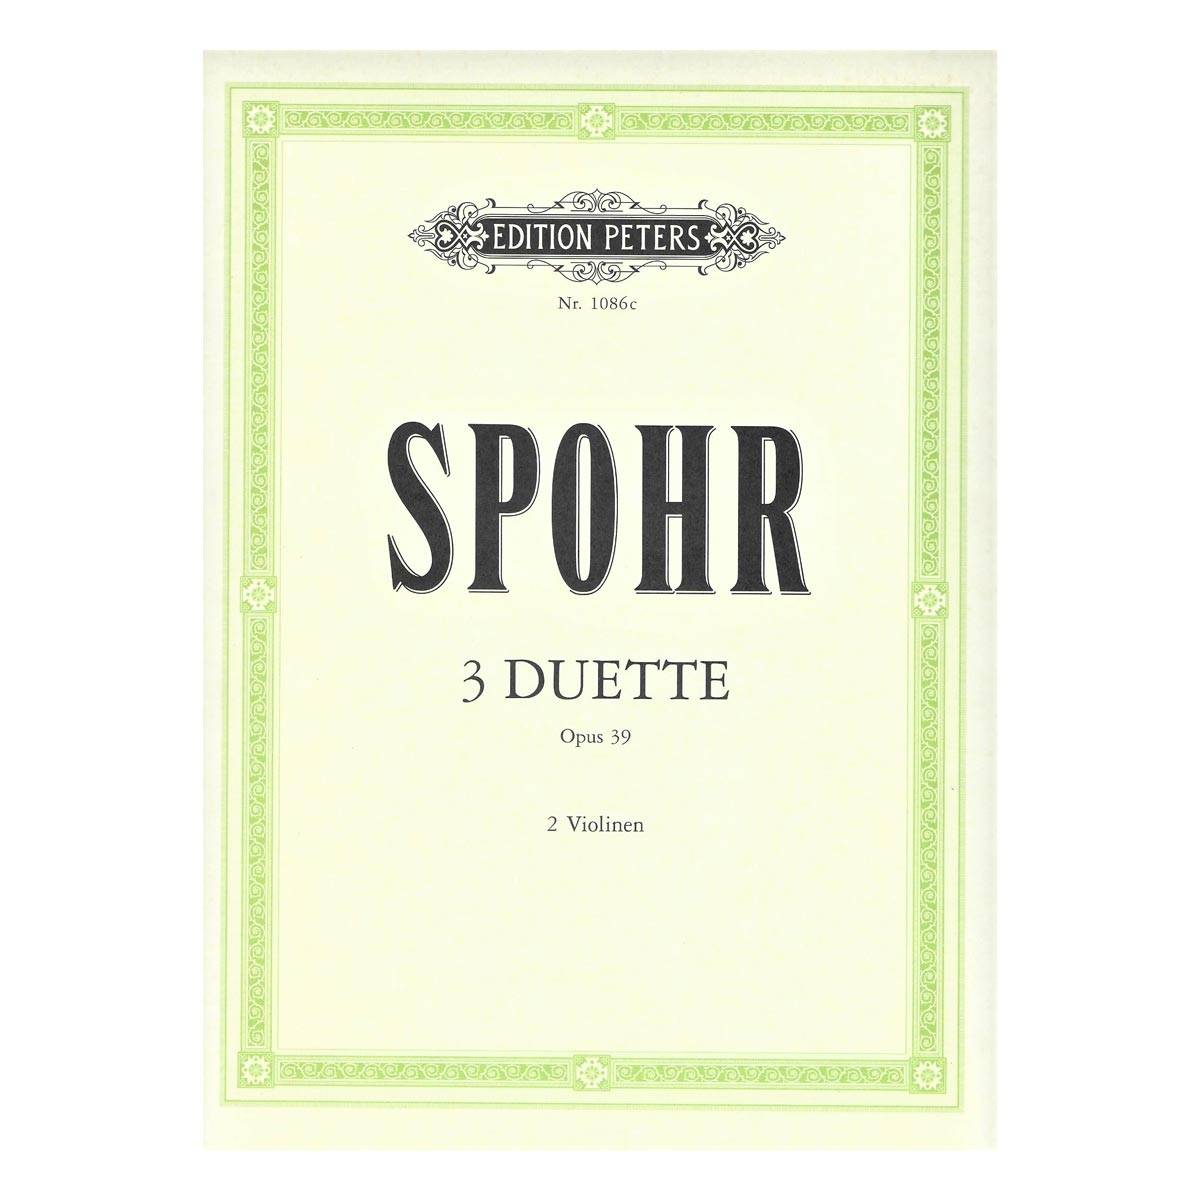 Spohr - 3 Duette Opus 39